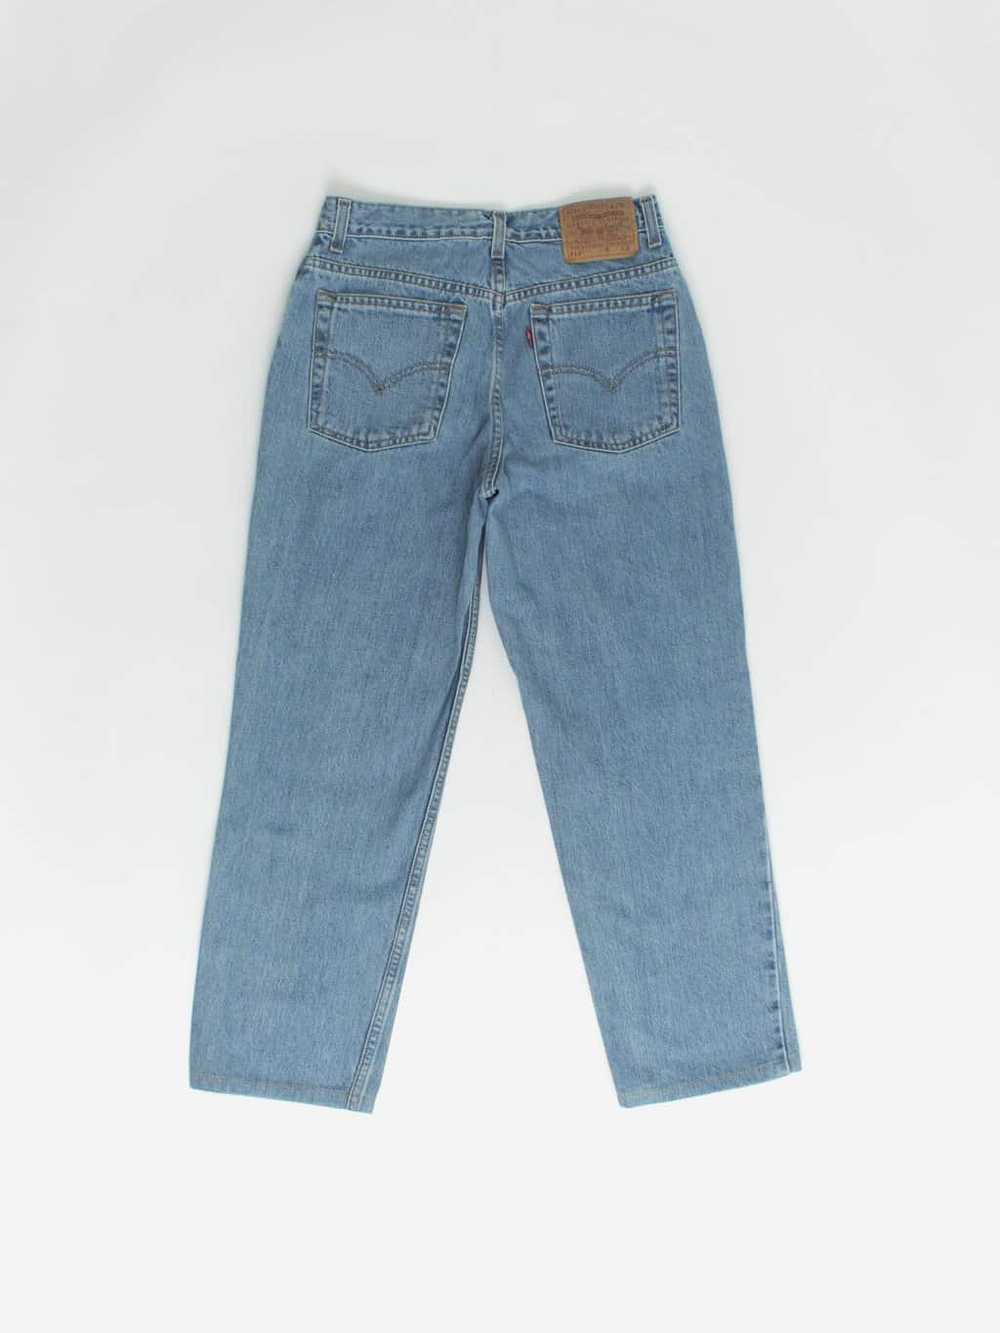 Vintage Levis 512 jeans 28 x 26 blue stonewash 90… - image 3